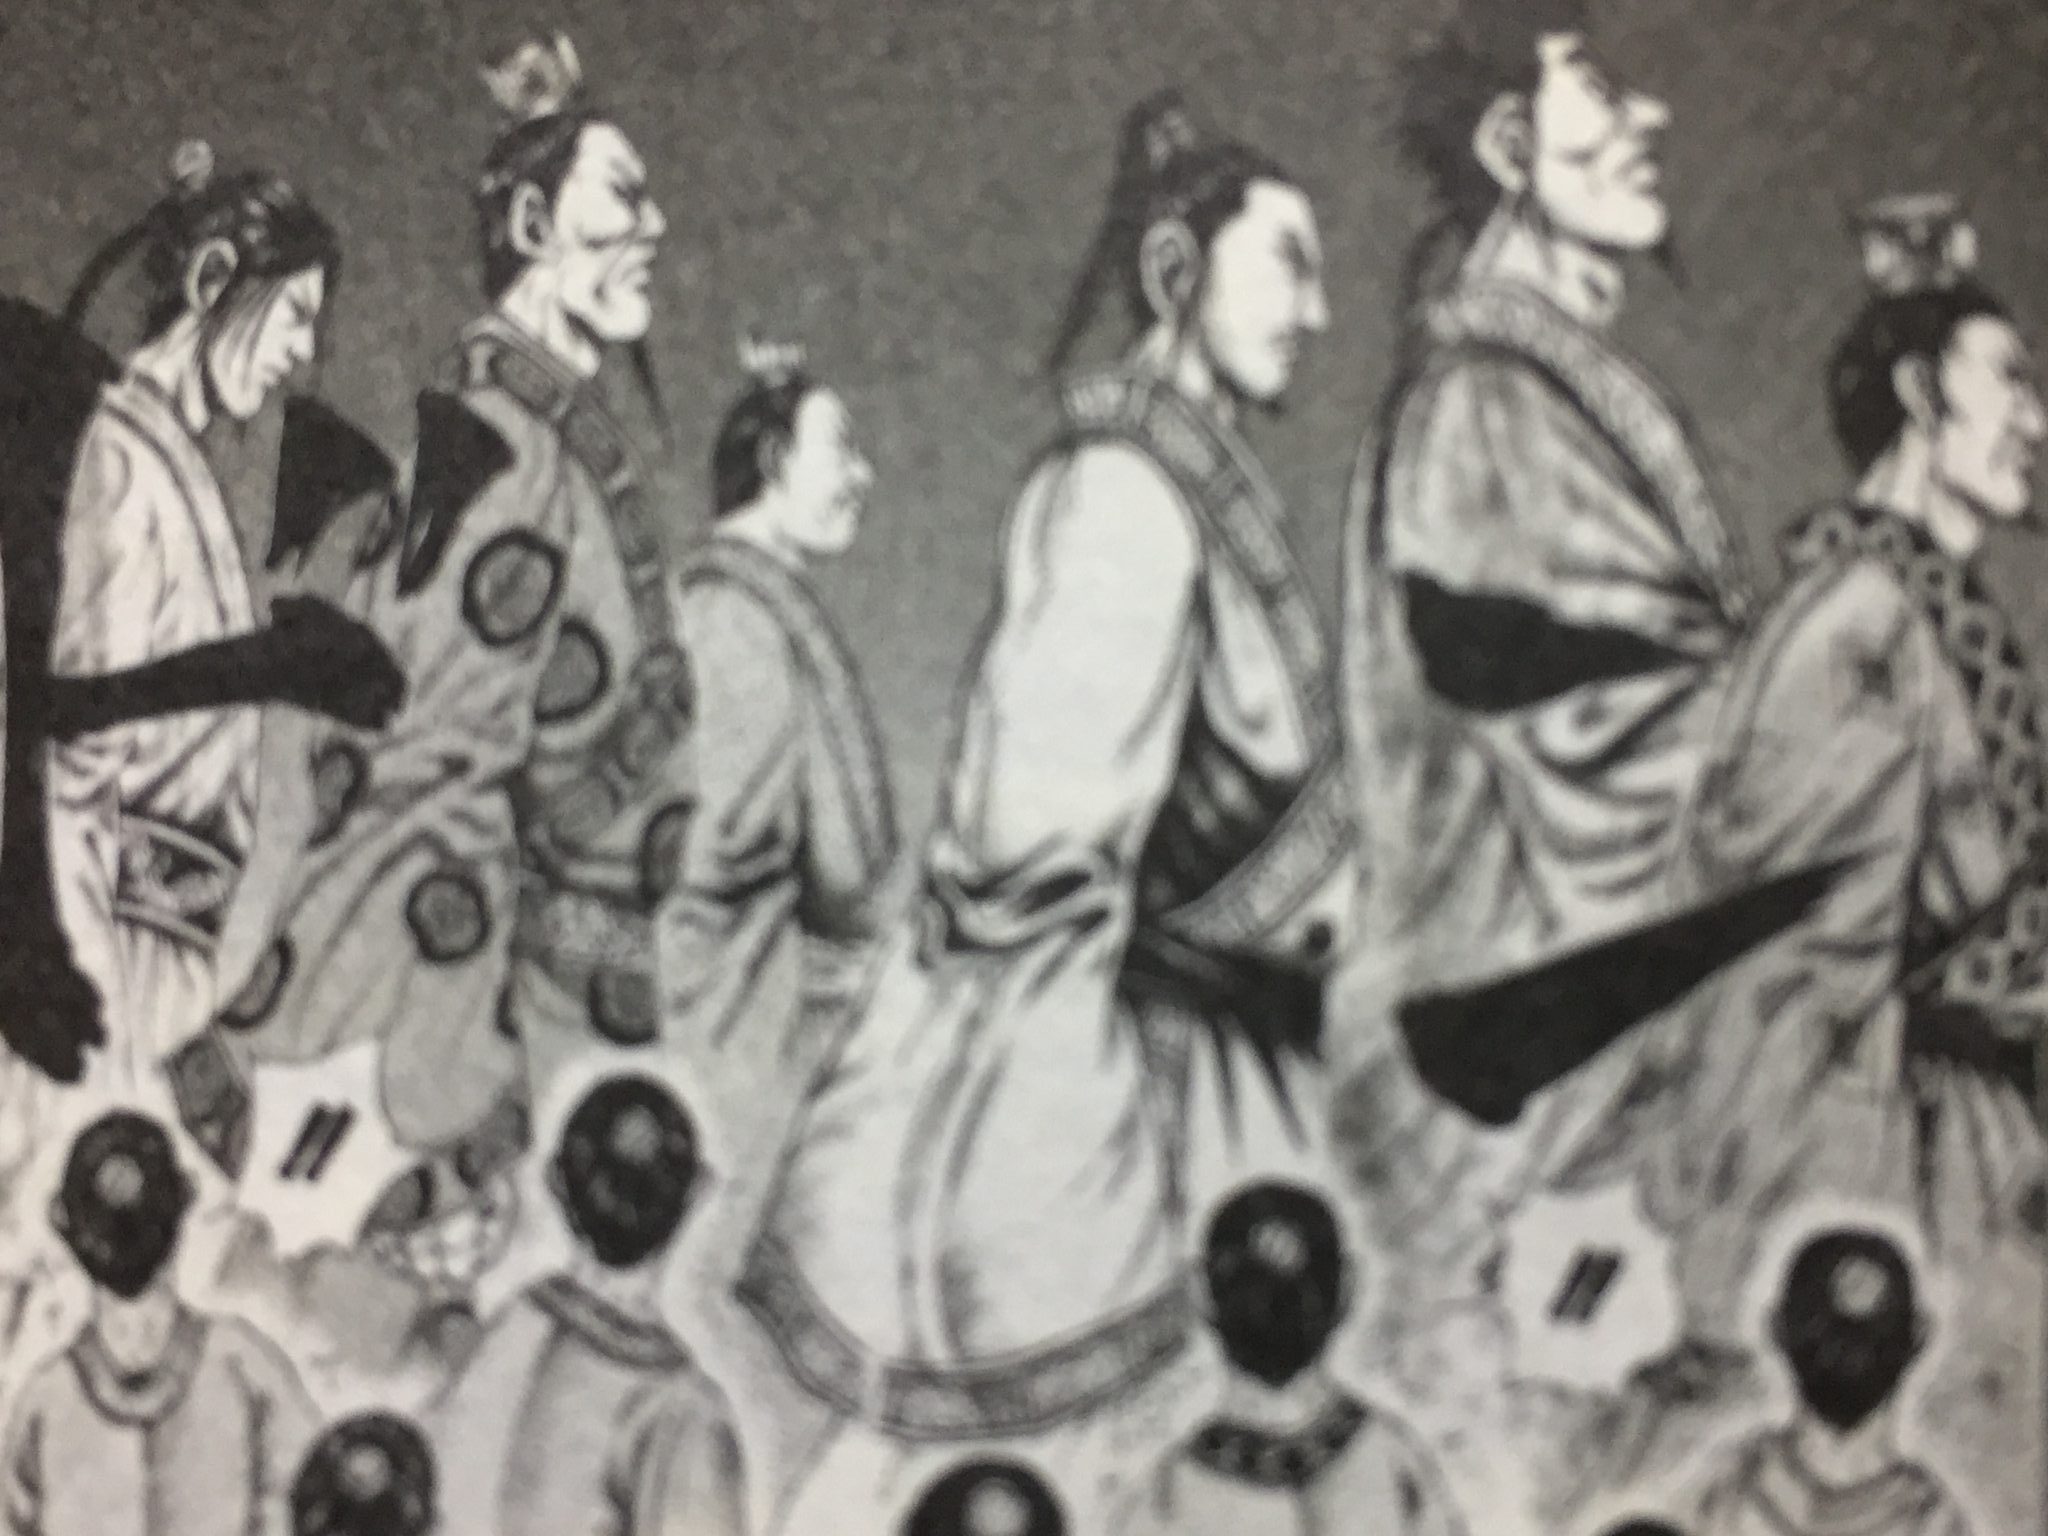 秦 三国志 キングダム 春秋戦国時代 と史実と考察の歴史書